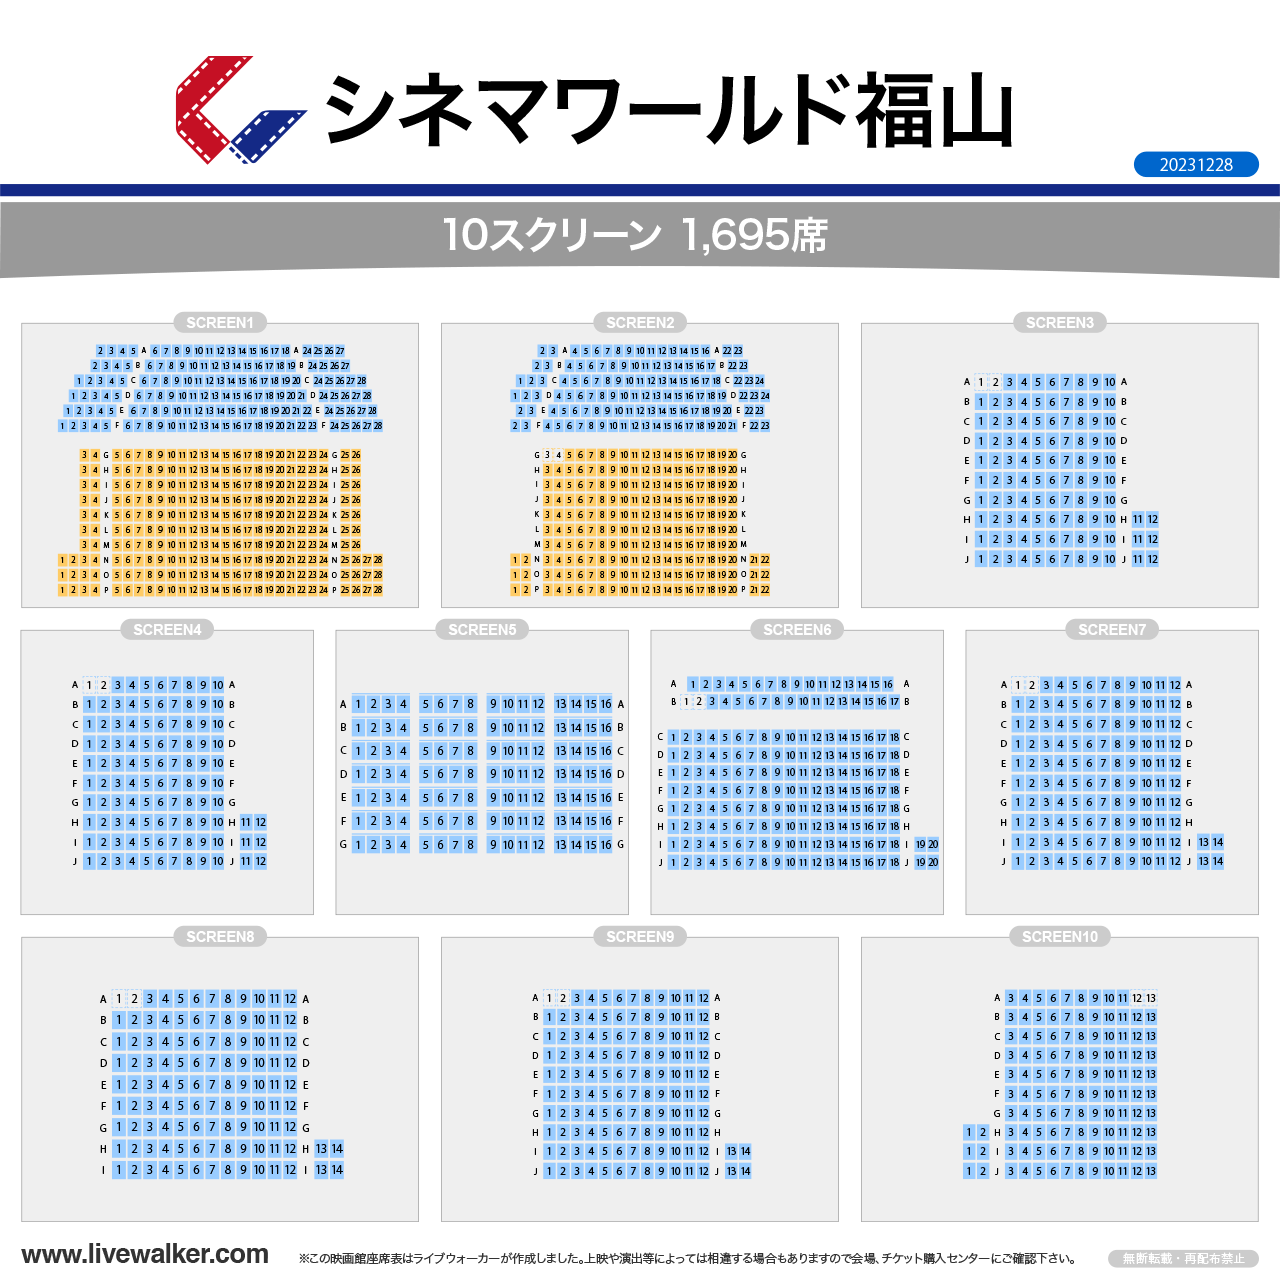 福山コロナシネマワールドスクリーンの座席表